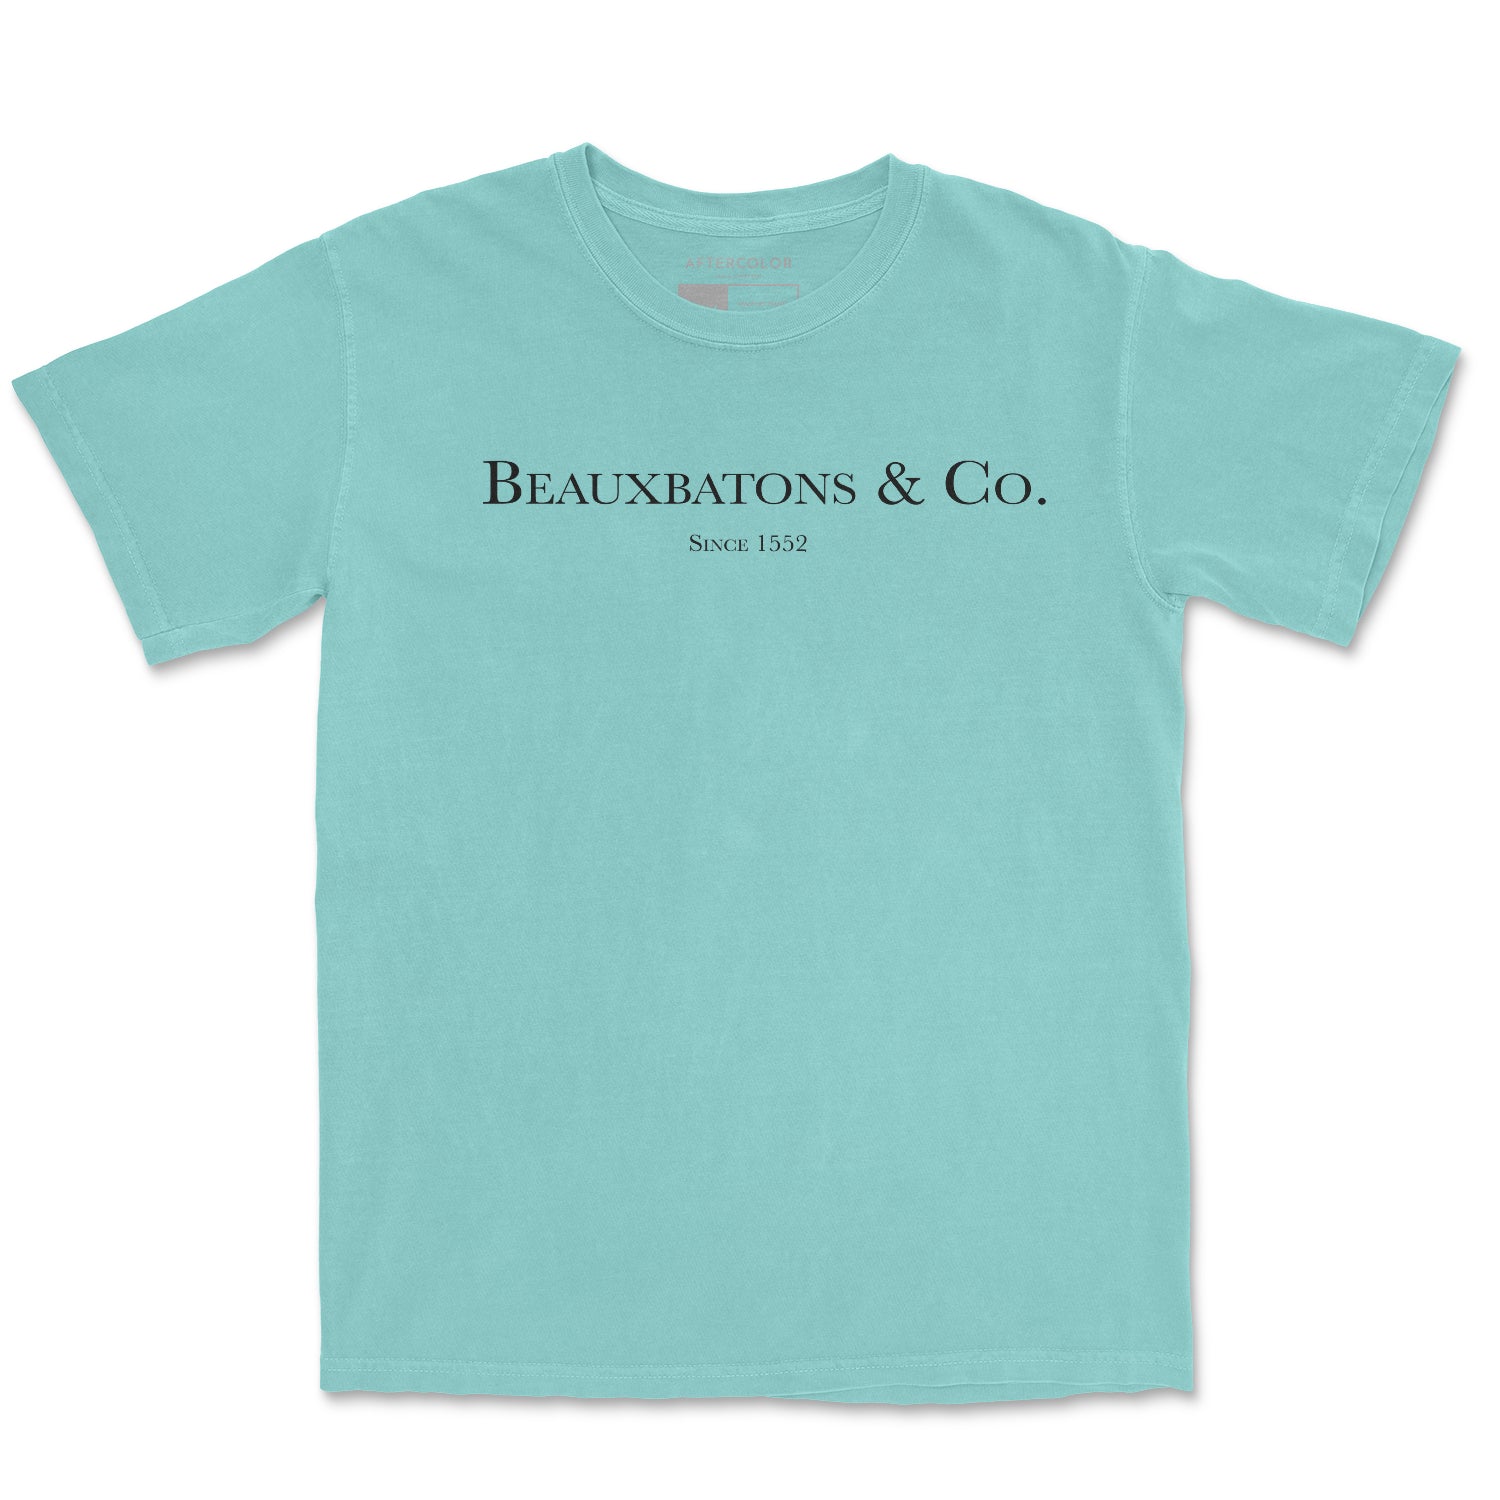 Beauxbatons & Co. Garment Dyed Tee